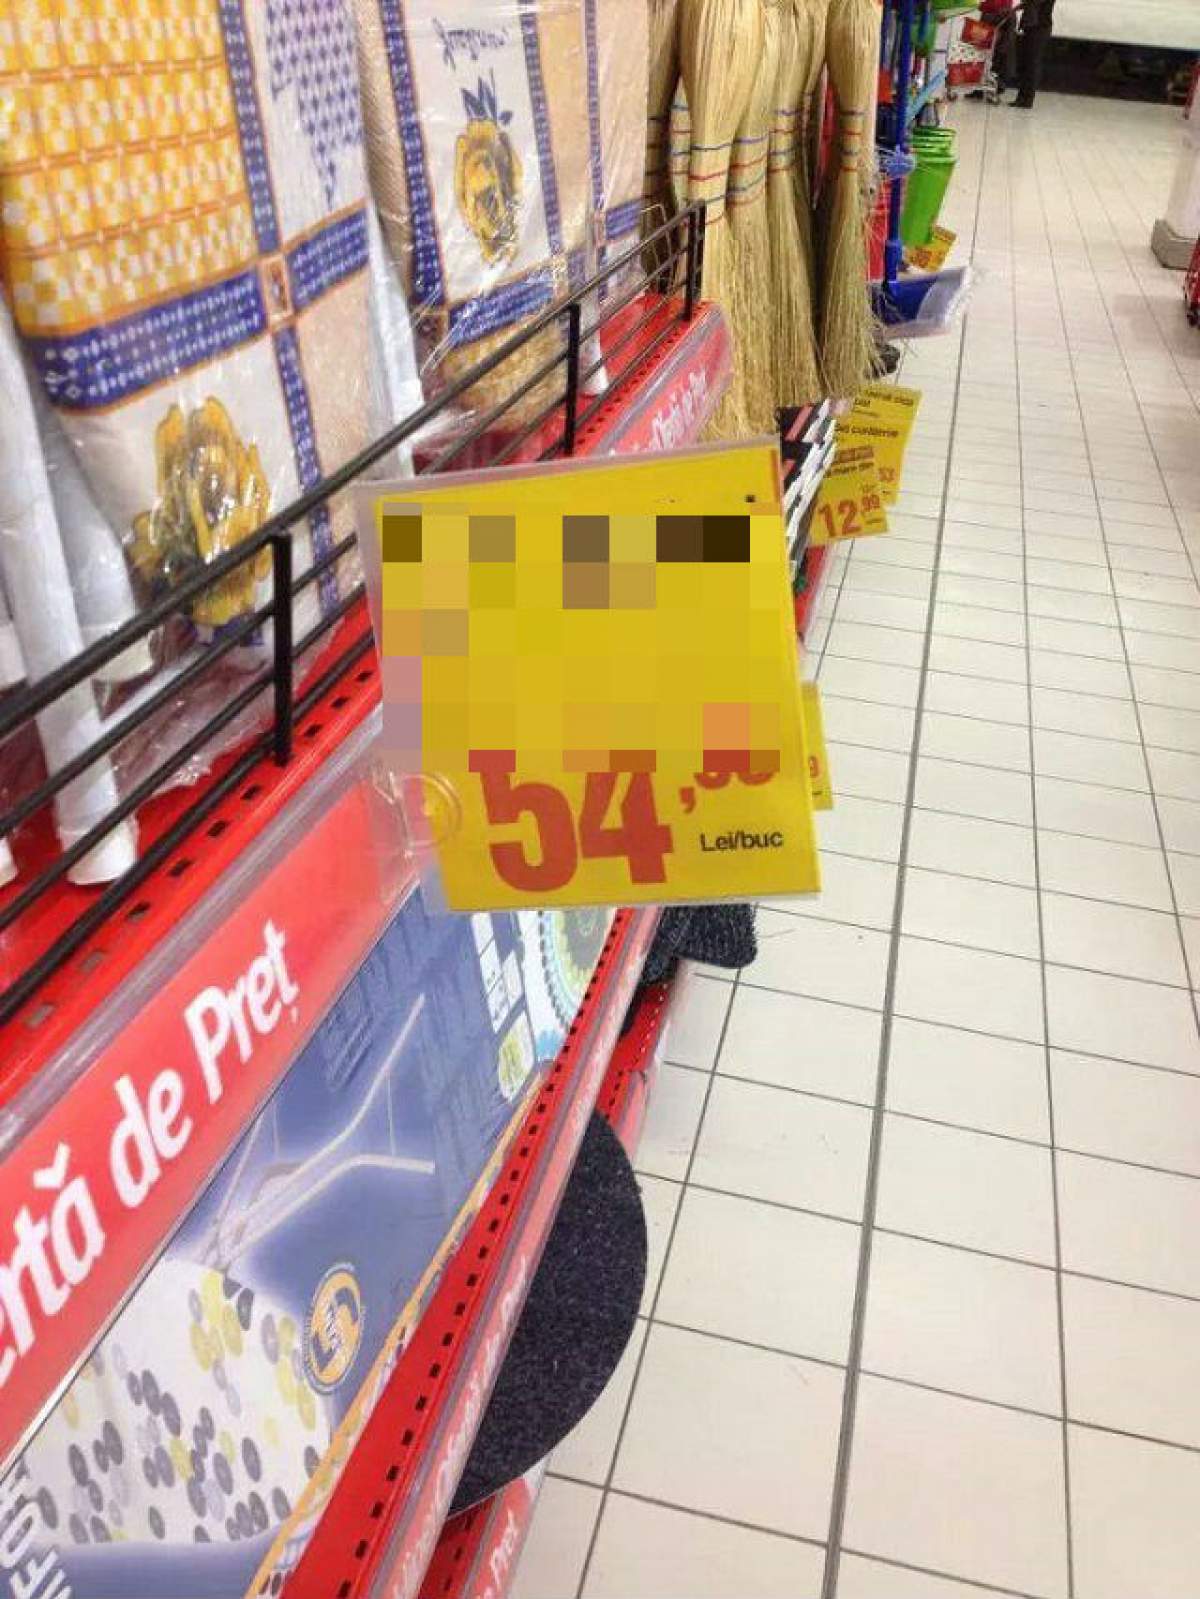 Anunţul dintr-un supermarket care i-a făcut pe clienţi să râdă cu lacrimi! S-a întâmplat chiar în Bucureşti